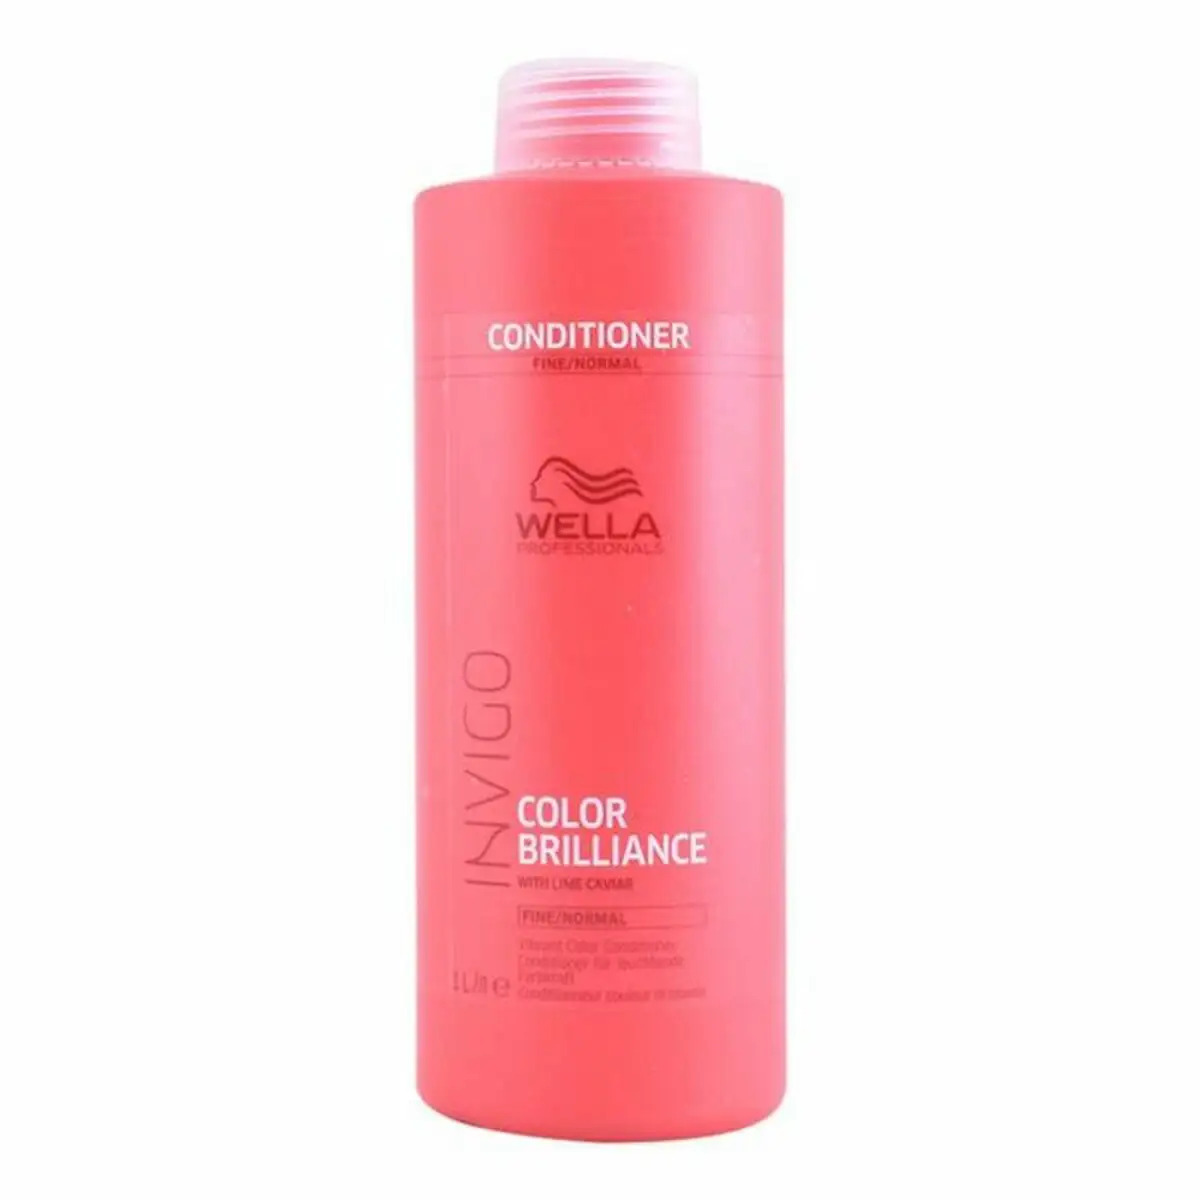 Apre s shampoing pour cheveux fins invigo color brilliance wella 1000 ml_8757. Bienvenue sur DIAYTAR SENEGAL - Où Chaque Détail compte. Plongez dans notre univers et choisissez des produits qui ajoutent de l'éclat et de la joie à votre quotidien.